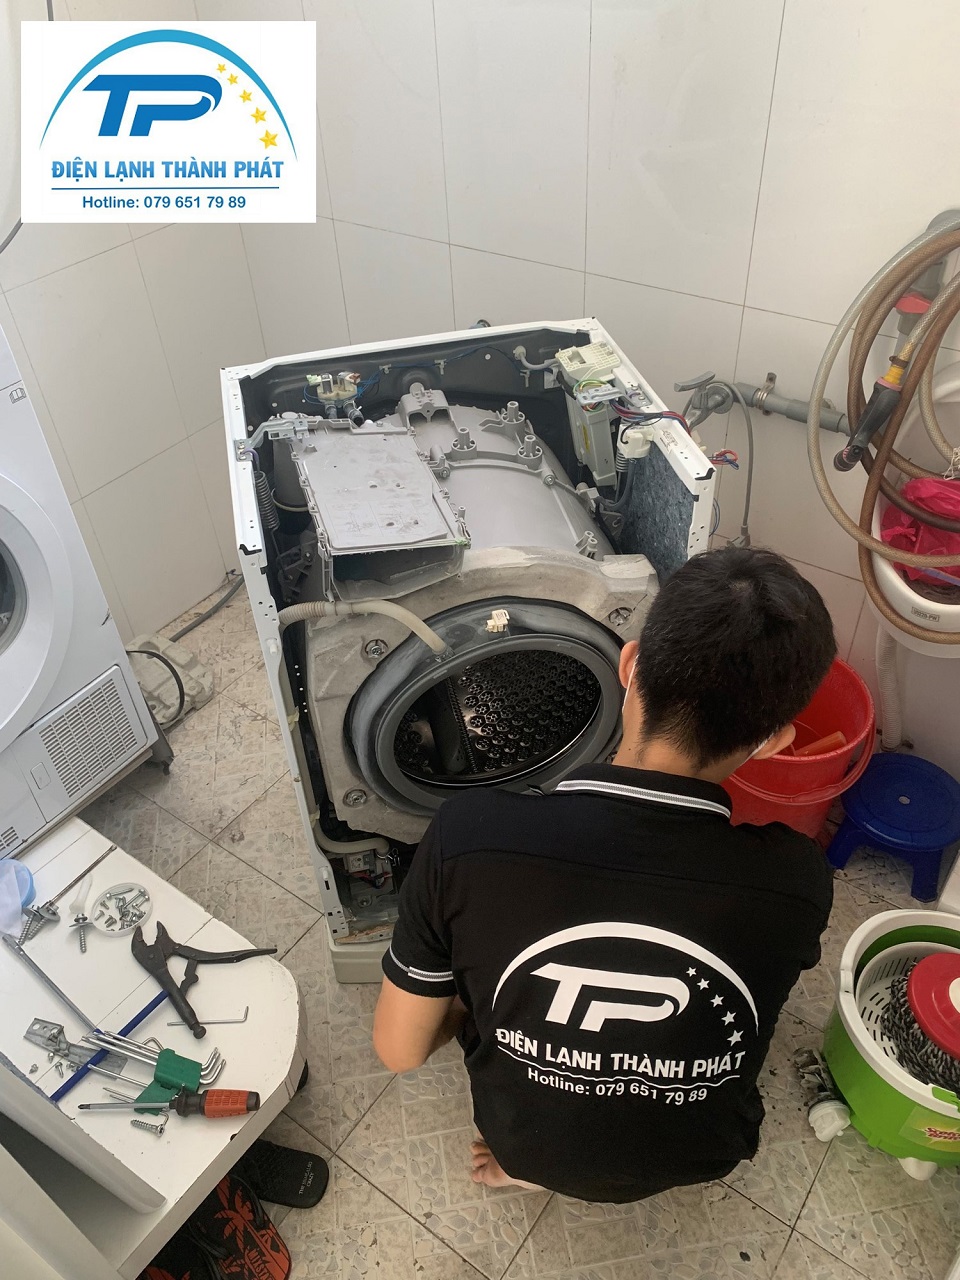 Máy giặt bị hư hỏng cần thợ sửa có kinh nghiệm chuyên môn đến khắc phục.